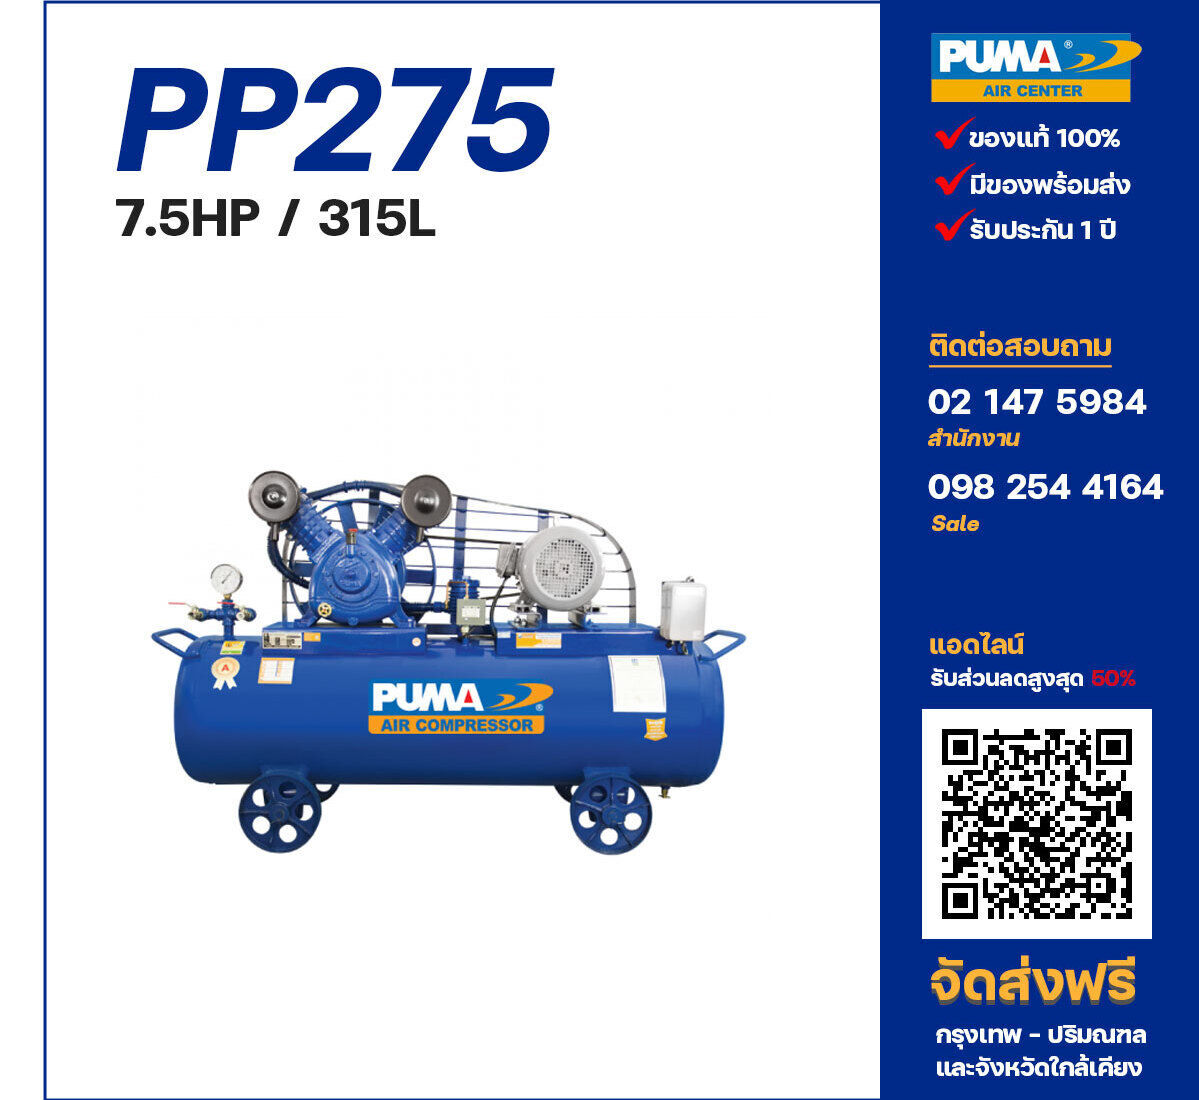 ปั๊มลมพูม่า PUMA PP275-PPM380V ปั๊มลมลูกสูบ ขนาด 2 สูบ 7.5 แรงม้า 315 ลิตร PUMA พร้อมมอเตอร์ PUMA ไฟ 380V ส่งฟรี กรุงเทพฯ-ปริมณฑล รับประกัน 1 ปี